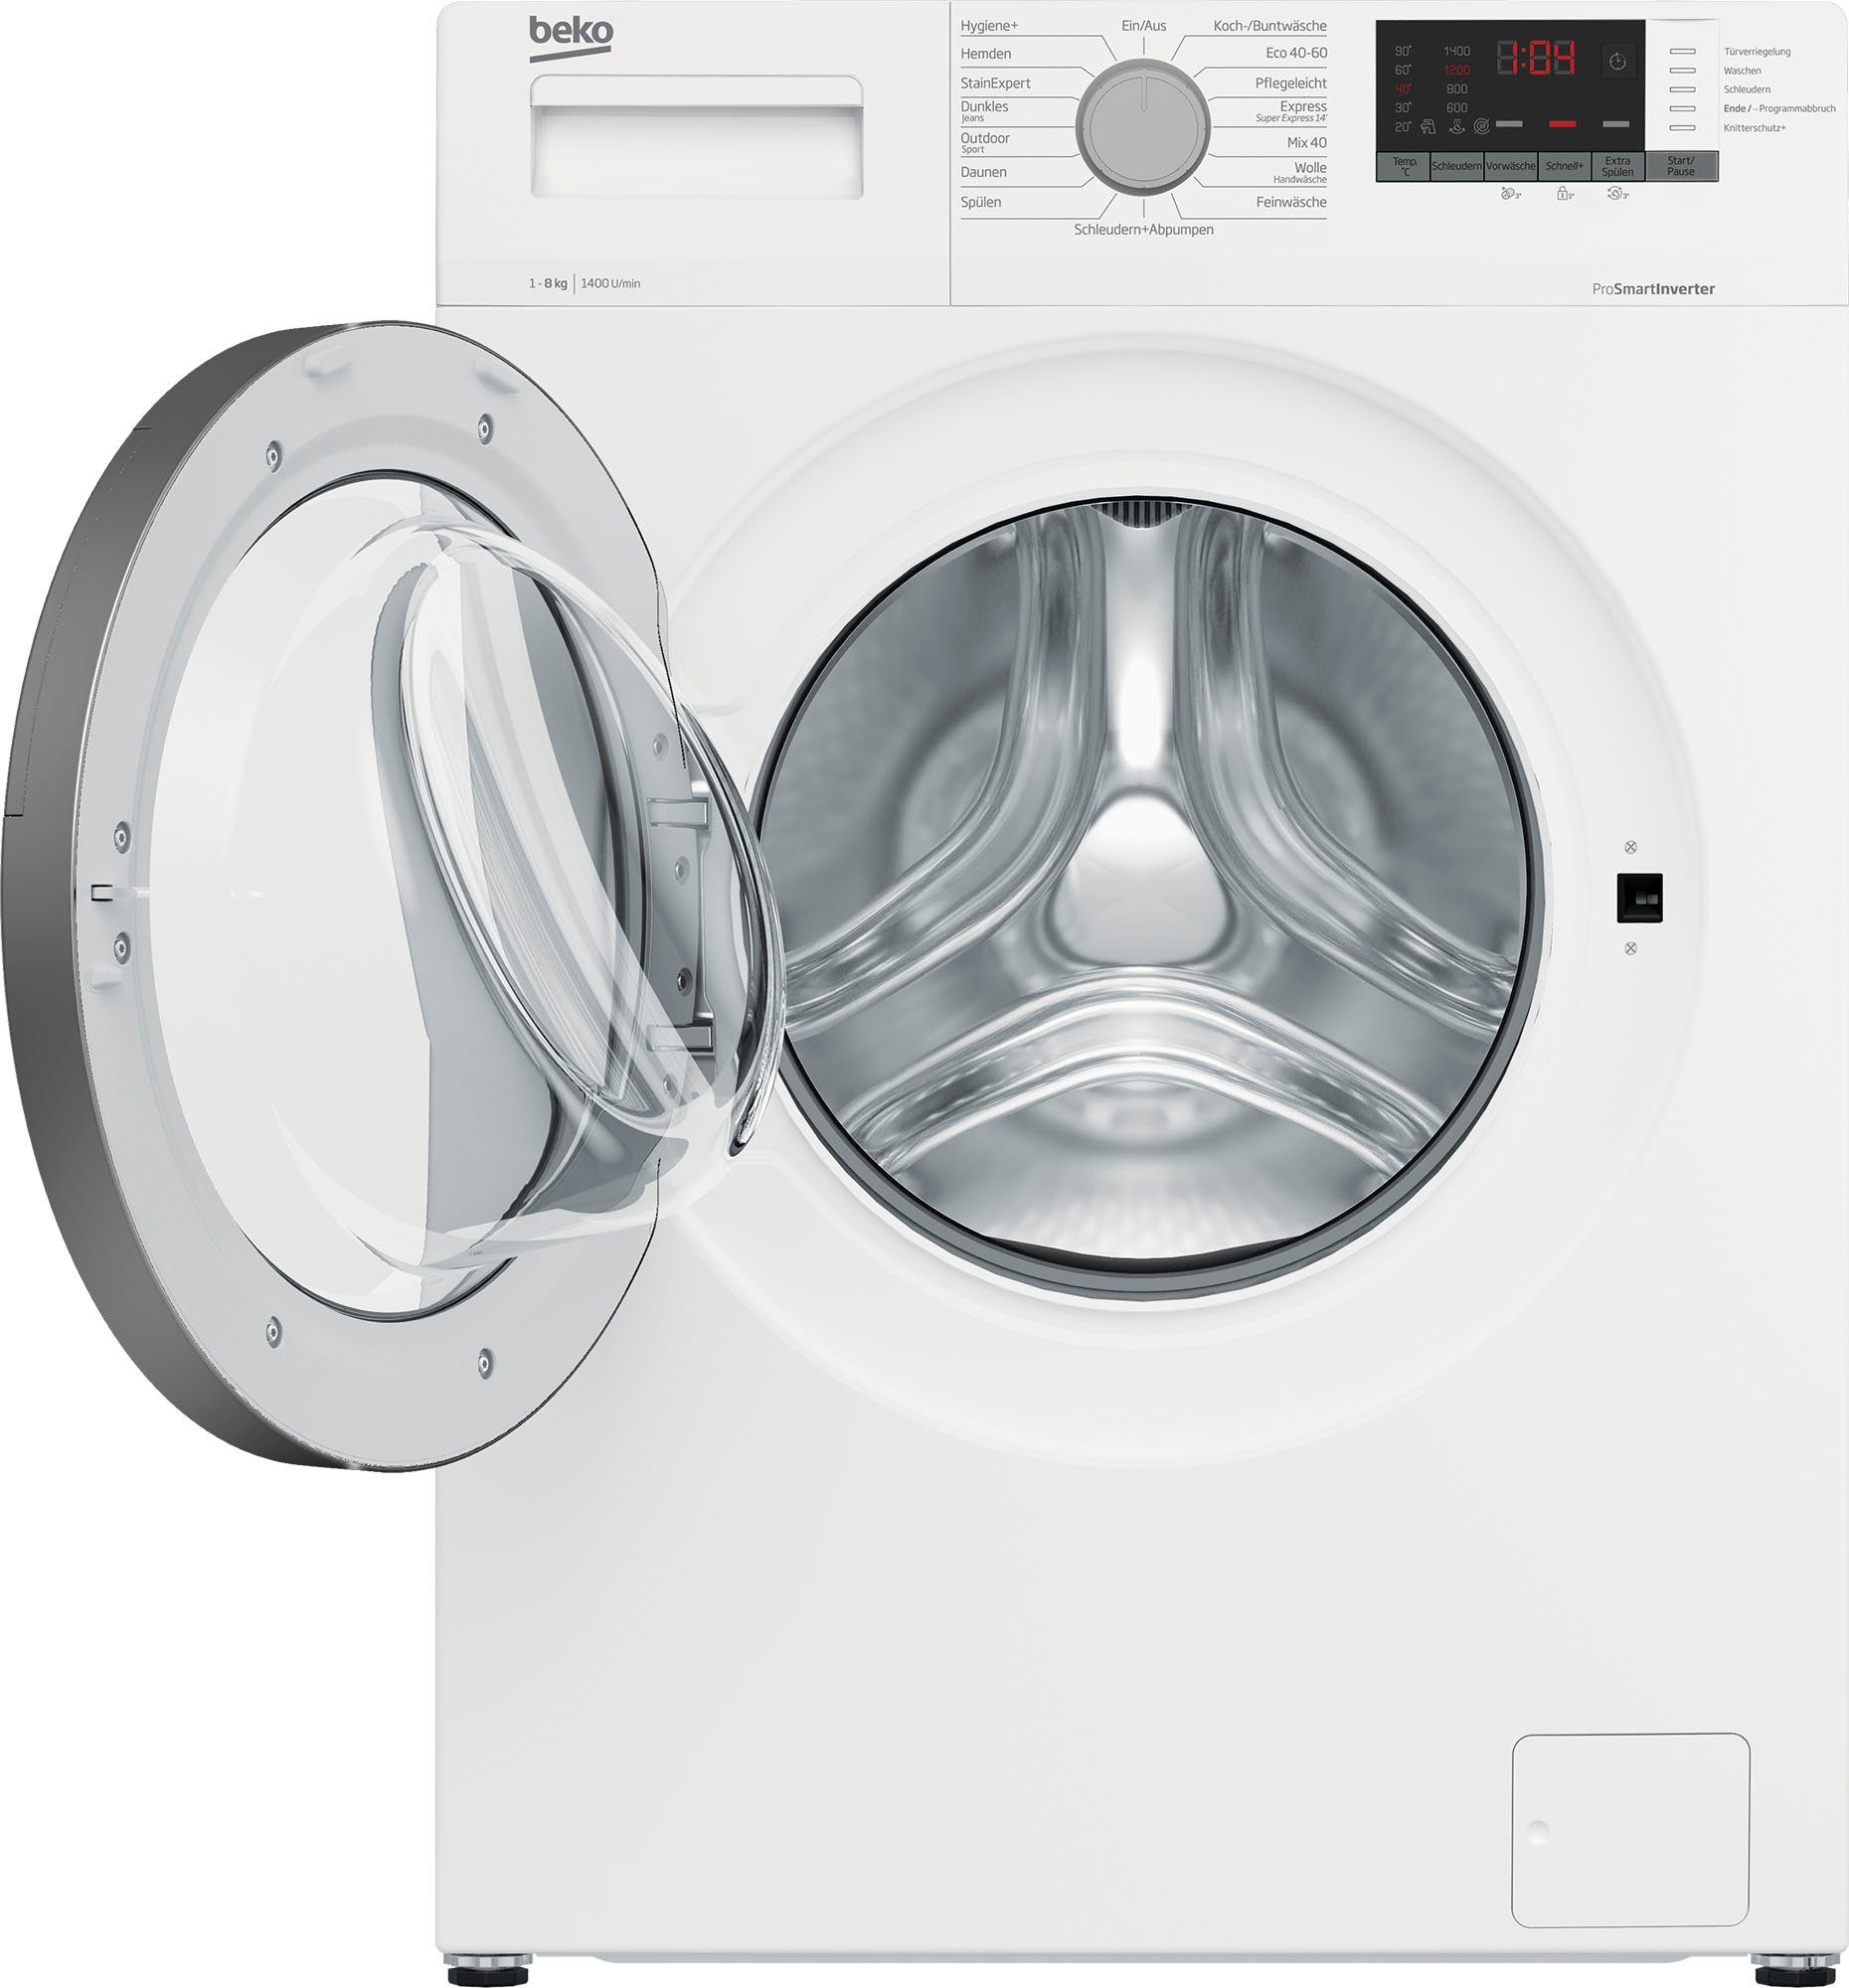 BEKO Waschmaschine WMO822A U/min kg, 7001440096, 8 1400